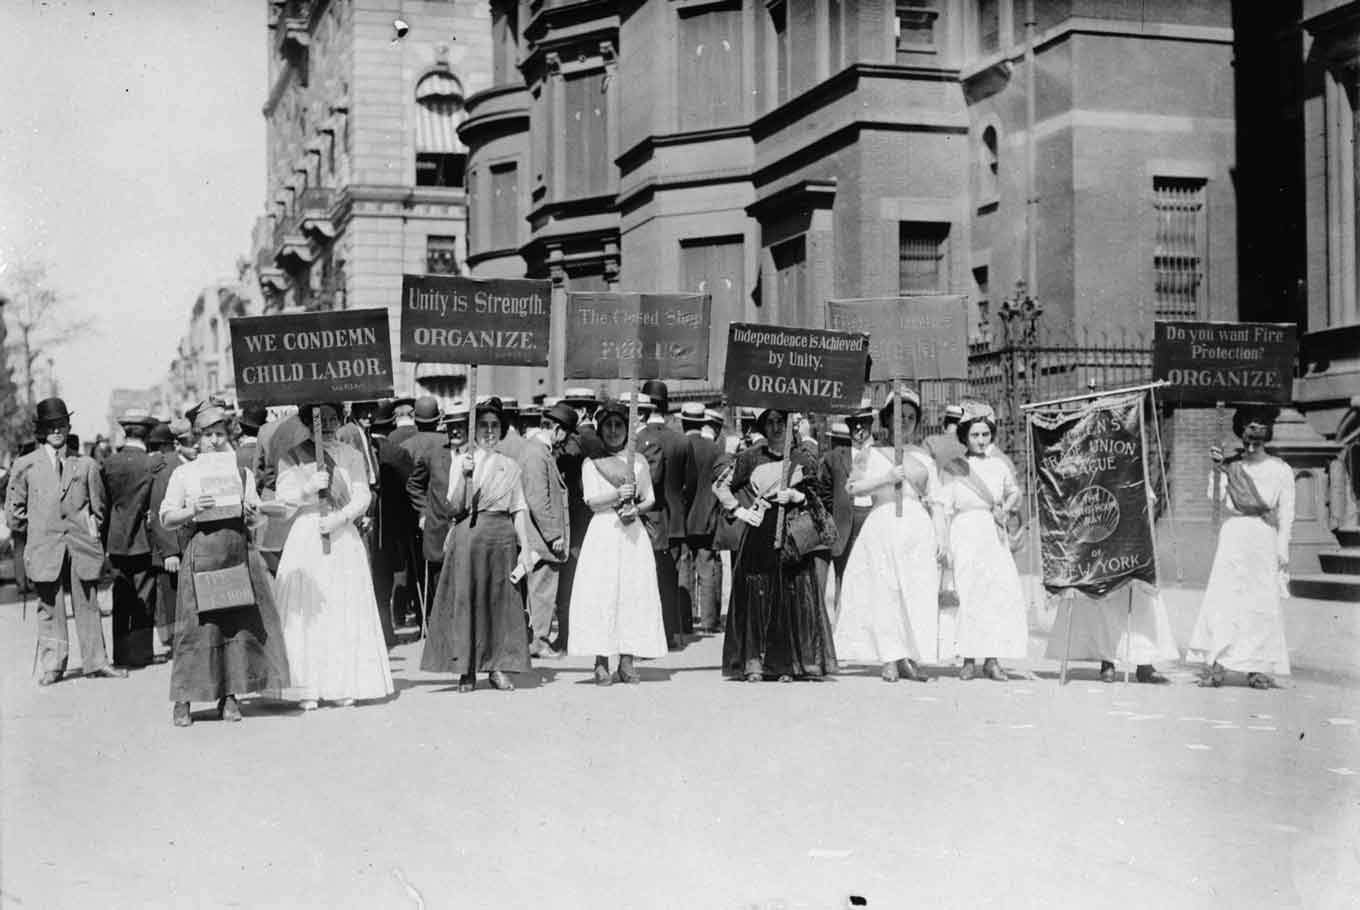 Historische foto van vrouwen die demonstreerden tegen kinderarbeid in New York City in de vroege jaren 1900 - met borden die dingen zeggen als "Wij veroordelen kinderarbeid" en"Eenheid is Kracht - Organiseren"